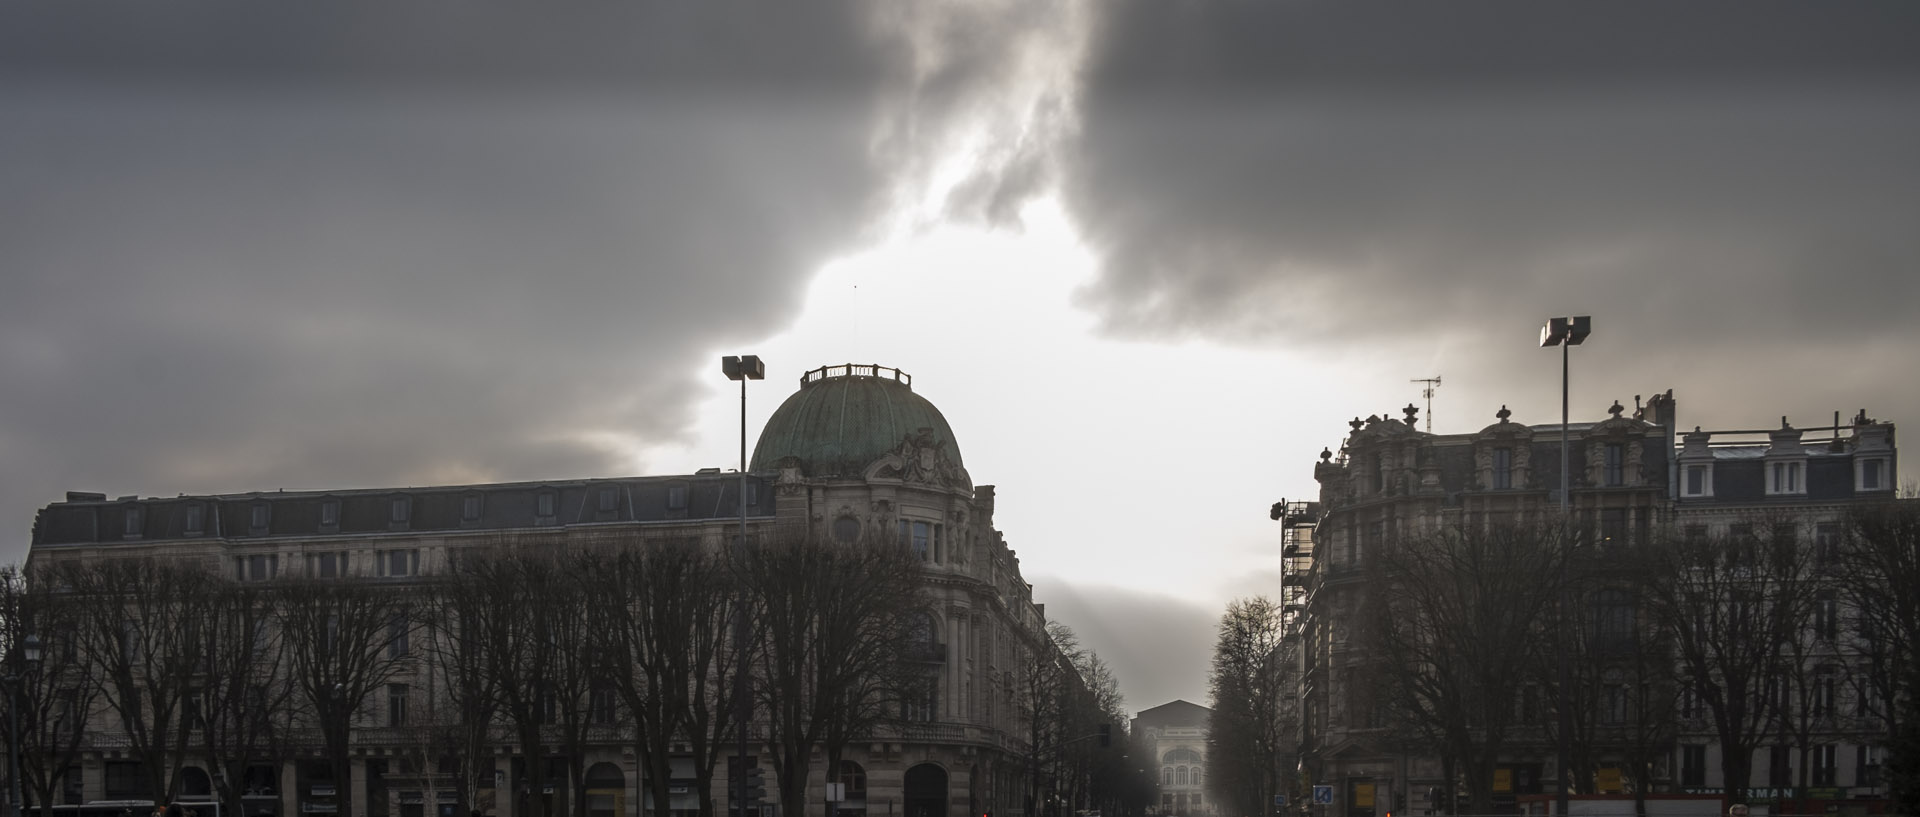 Vendredi 23 janvier 2015, 15:08, place de la République, Lille